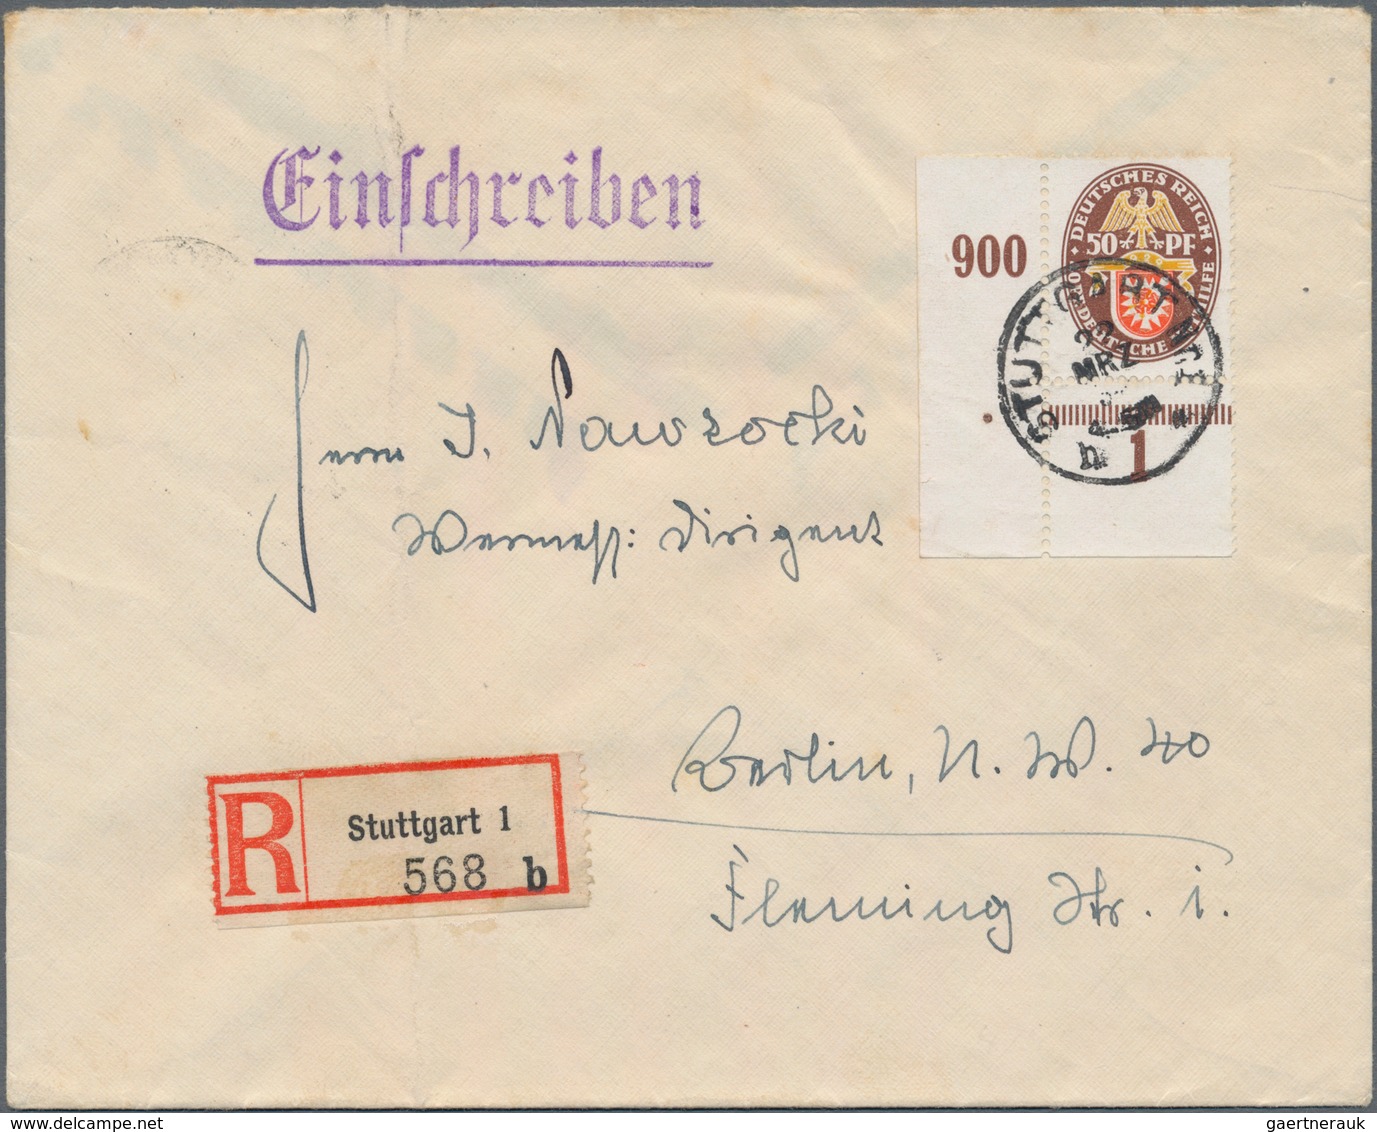 Deutsches Reich - Weimar: 1923/1932, gehaltvolle Sammlung mit ca.130 Belegen, dabei als Schwerpunkt